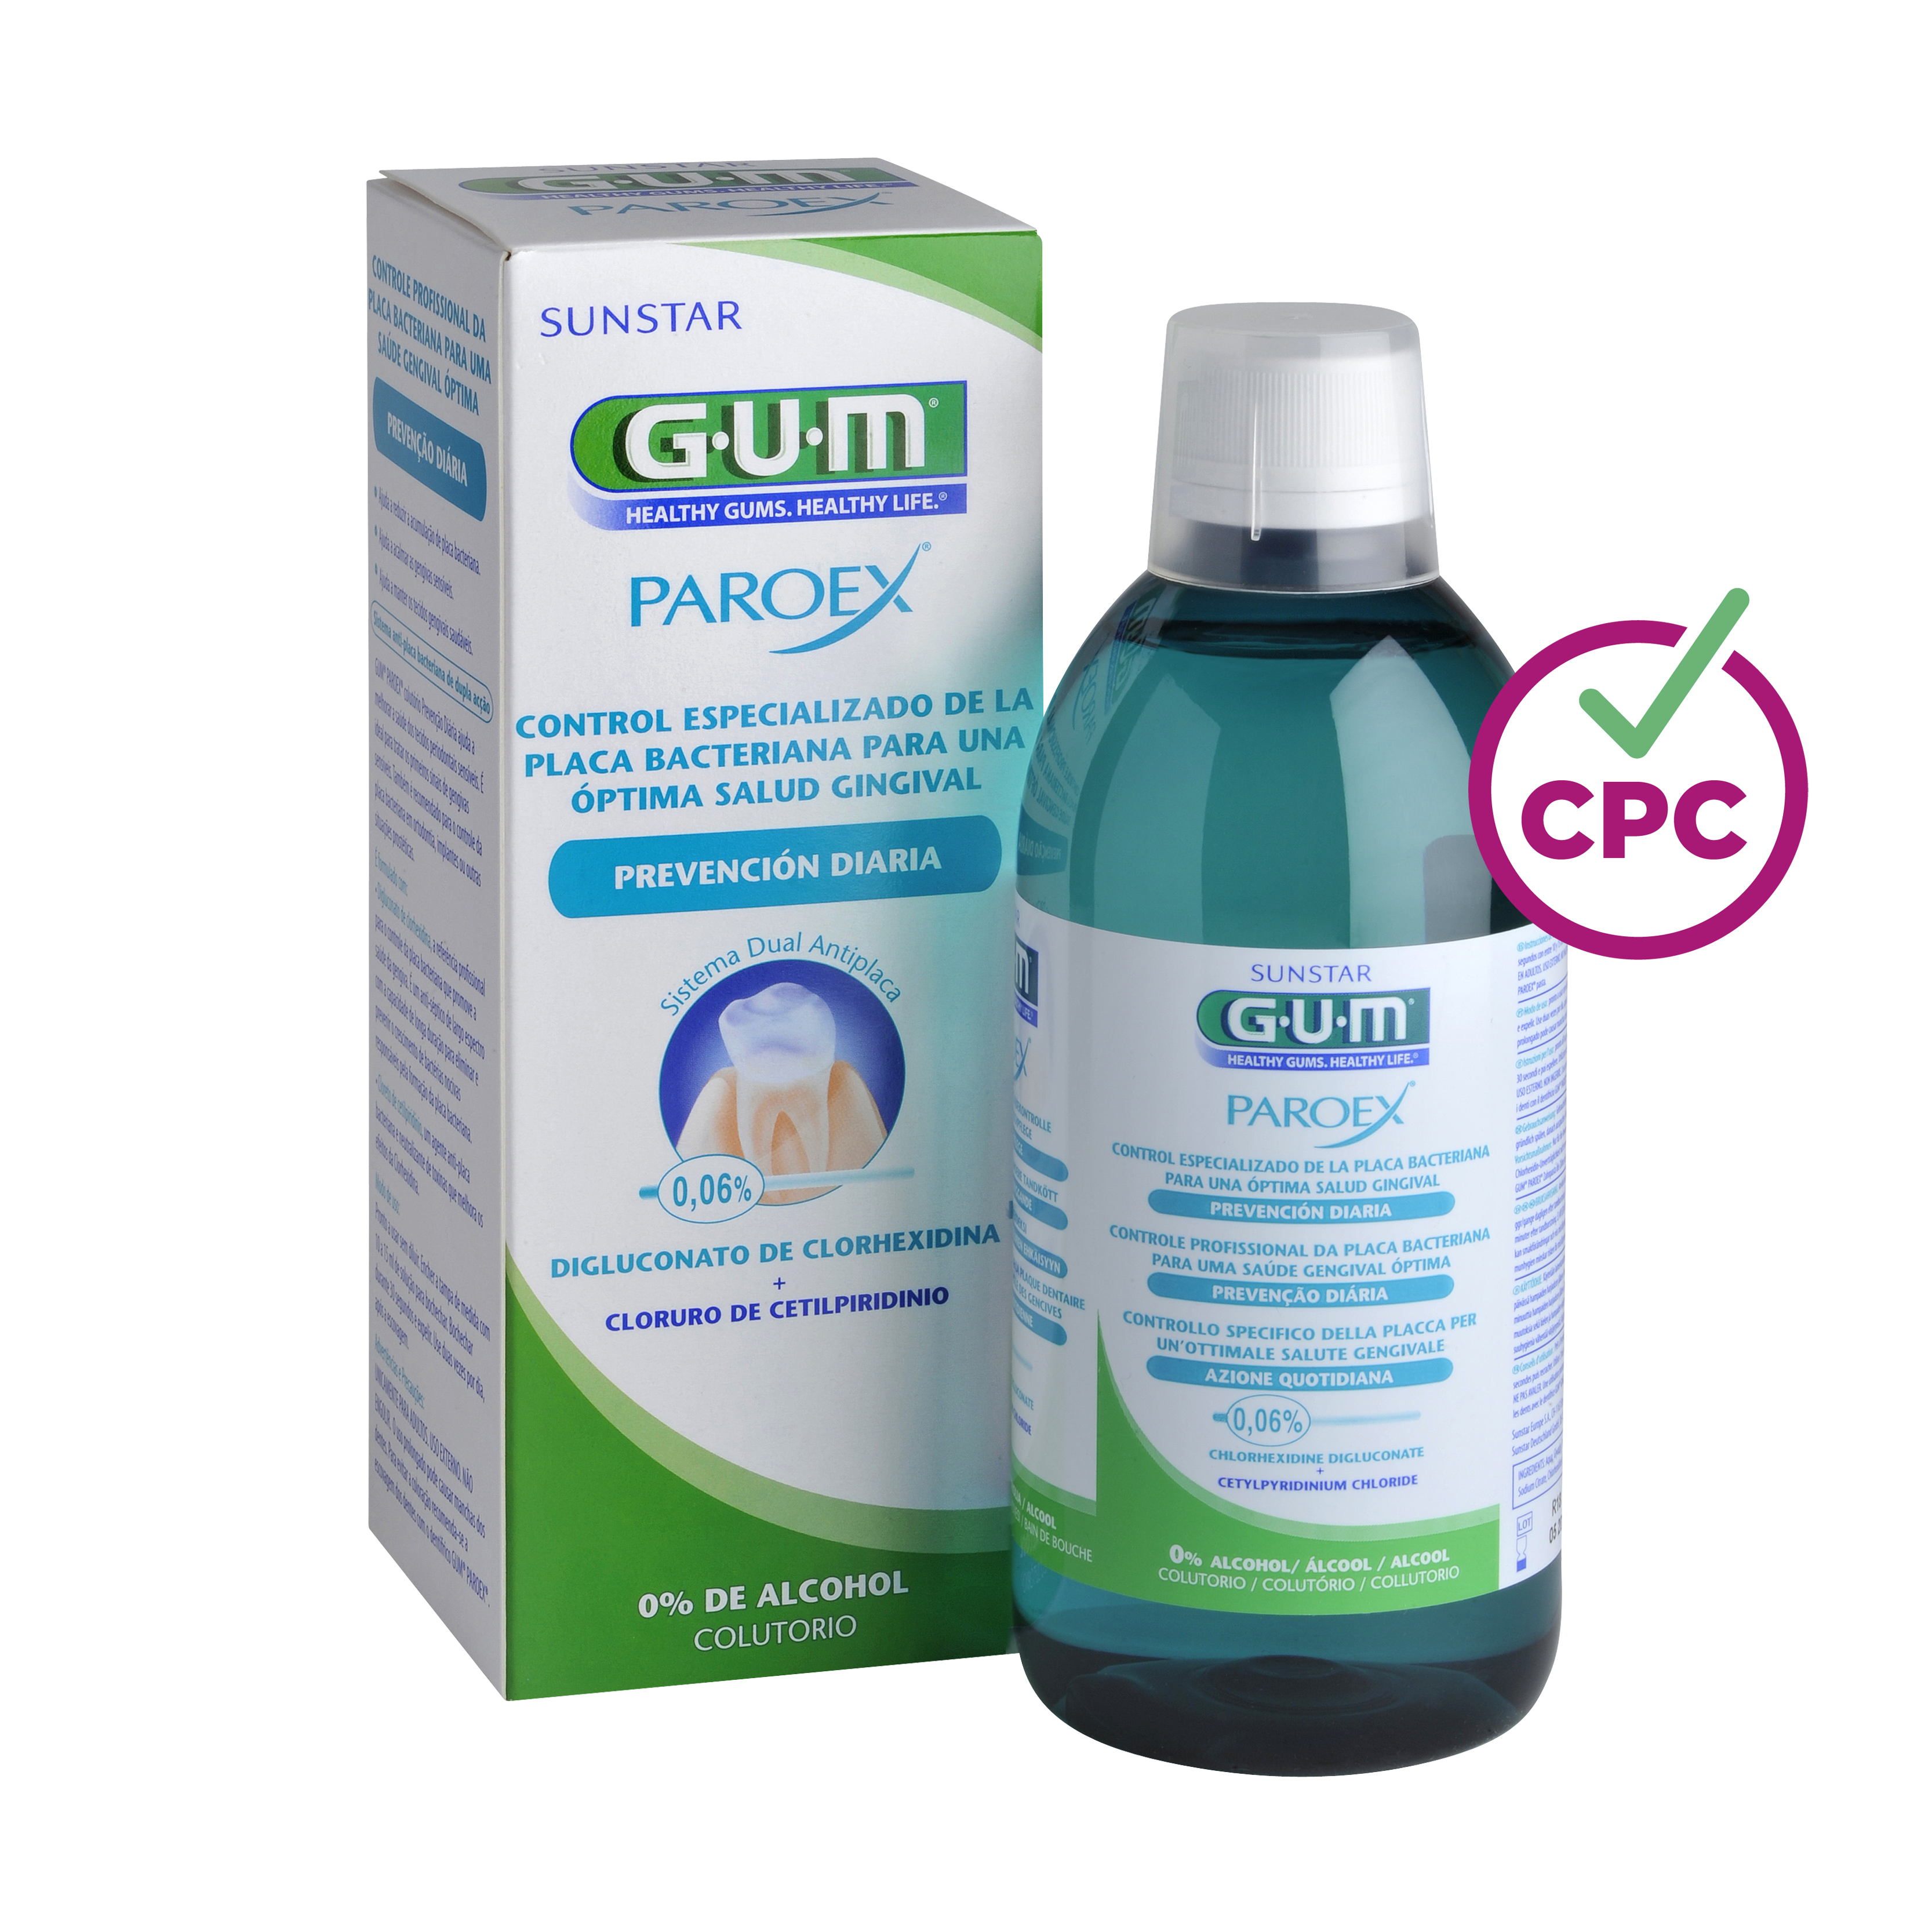 P1702-ES-GUM-PAROEX-006-Mouthrinse-500ml-Box-Bottle-CPC